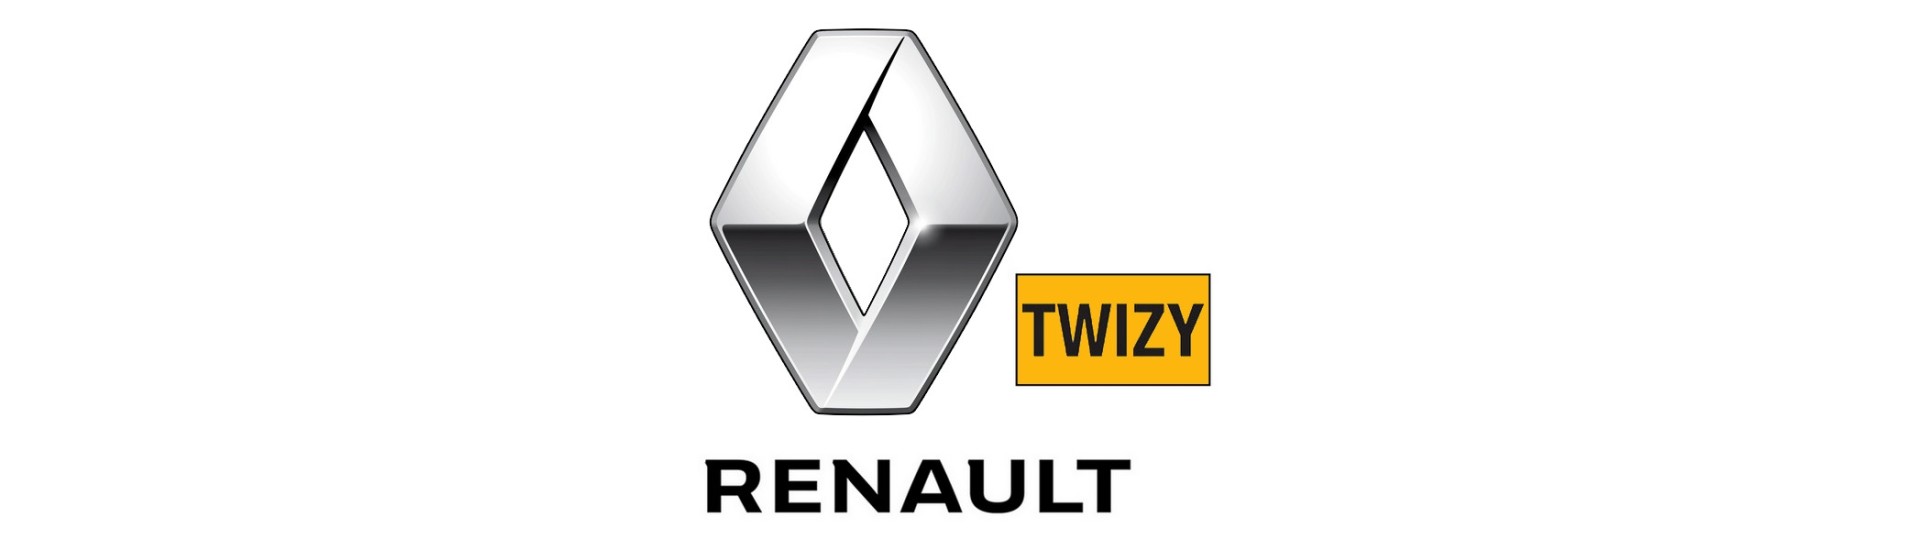 Fabricador eléctrico al mejor precio sin permiso Renault Twizy